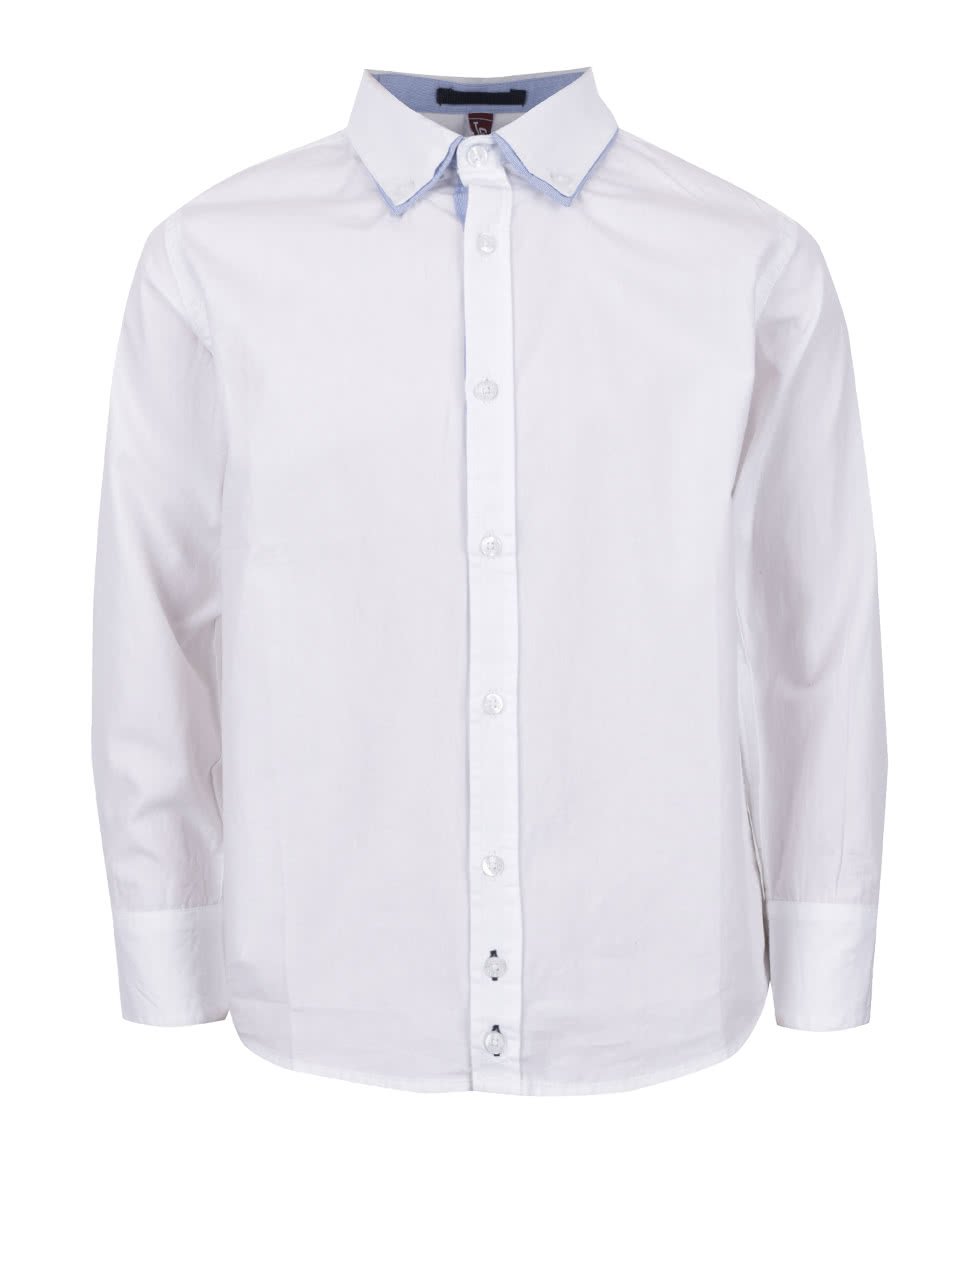 Bílá klučičí košile s dvojitým límečkem 5.10.15.